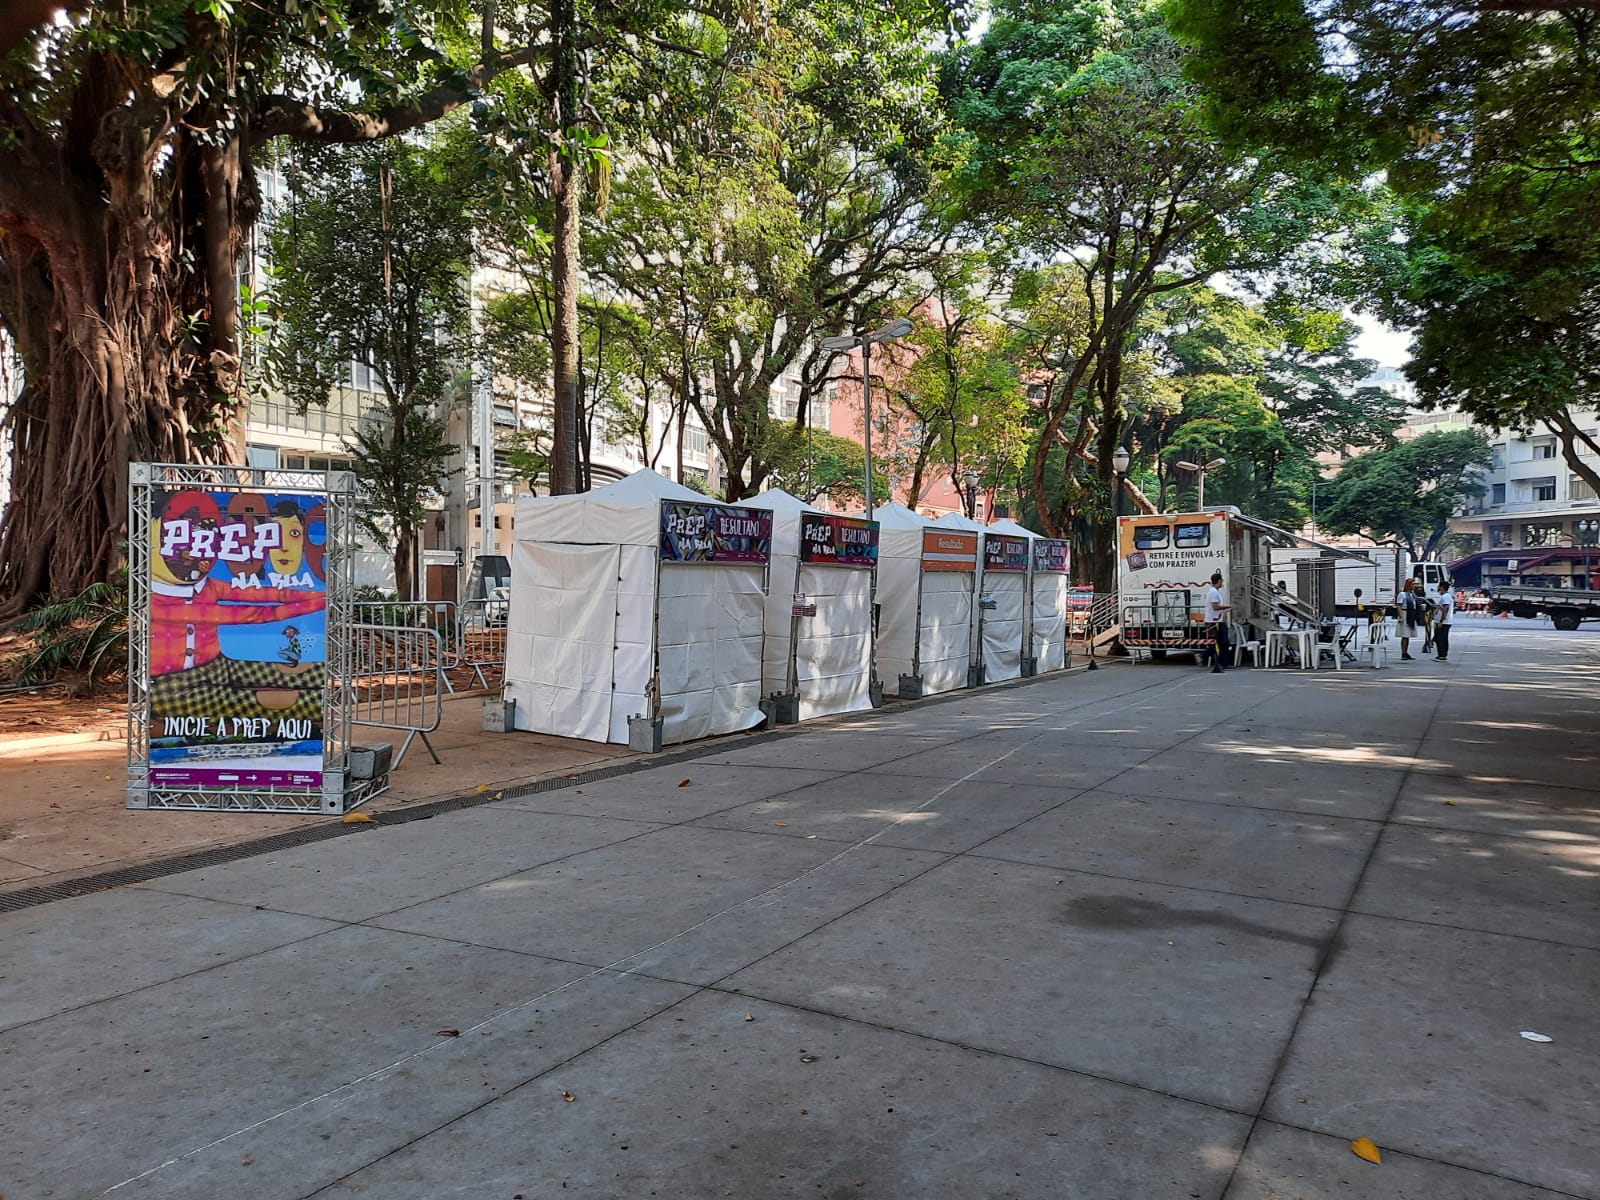 Foto de ambiente. Em um espaço com árvores em volta estão montadas cinco tendas brancas uma ao lado da outra. À esquerda da imagem, está um cartaz colorido com a frase "PrEP na Rua".